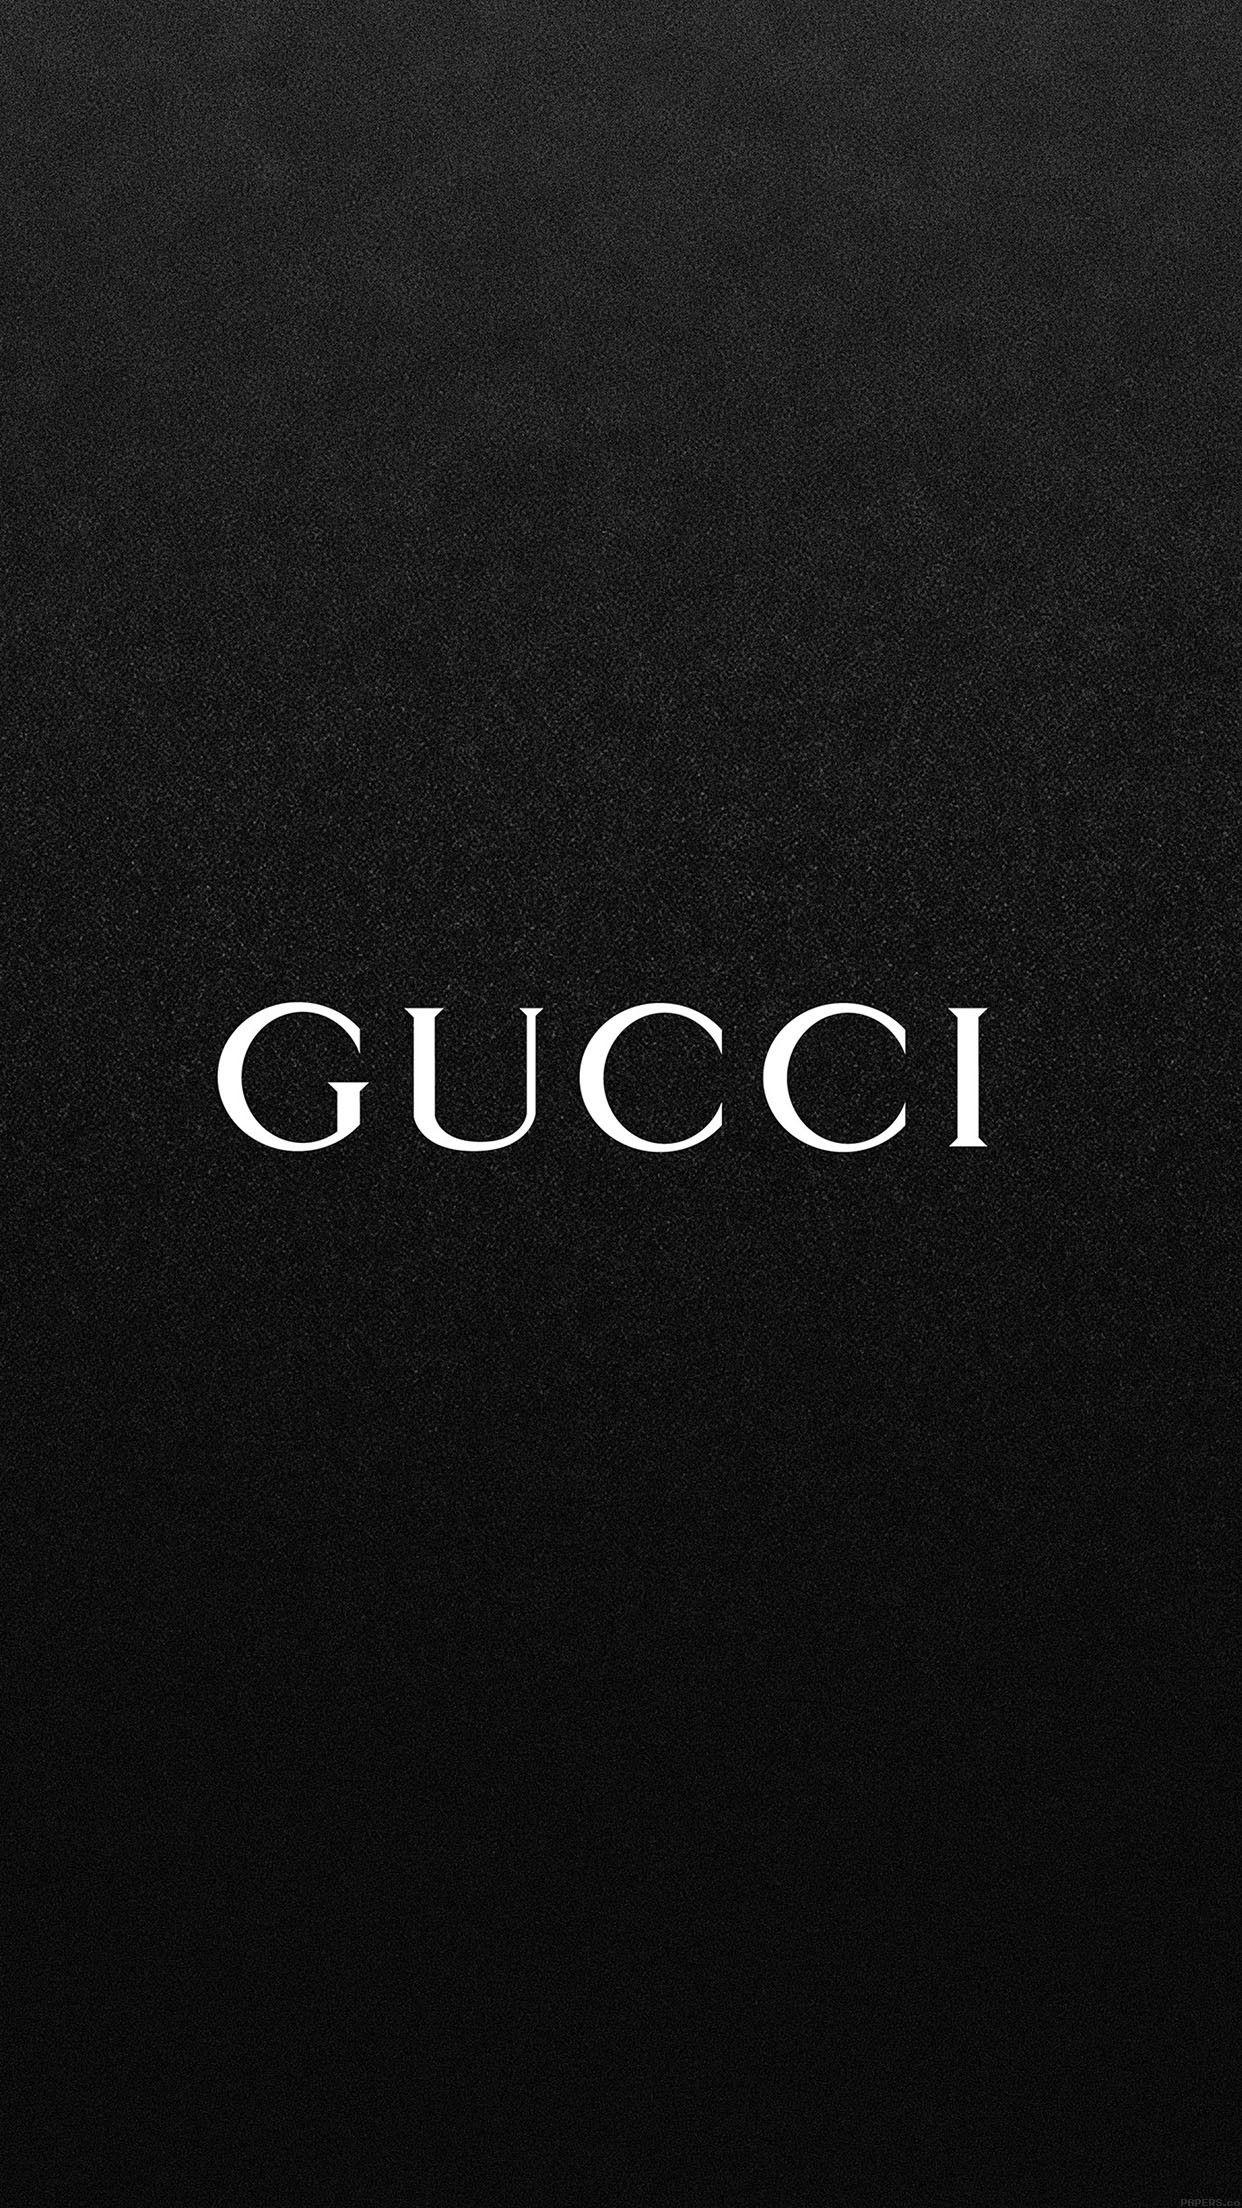 1242x2208 Hình nền Gucci sang trọng cho iPhone X, 8, 7, 6